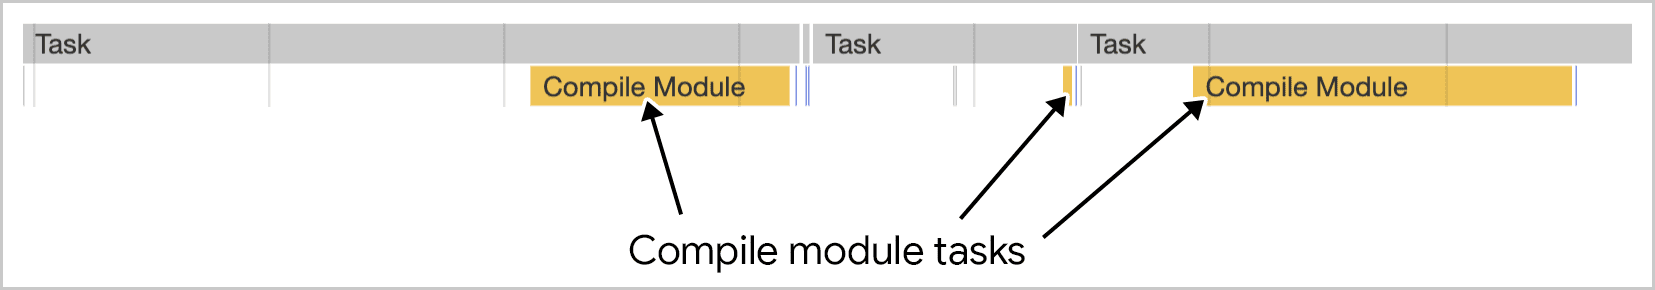 La compilación de módulos funciona en varias tareas, como se muestra en las Herramientas para desarrolladores de Chrome.